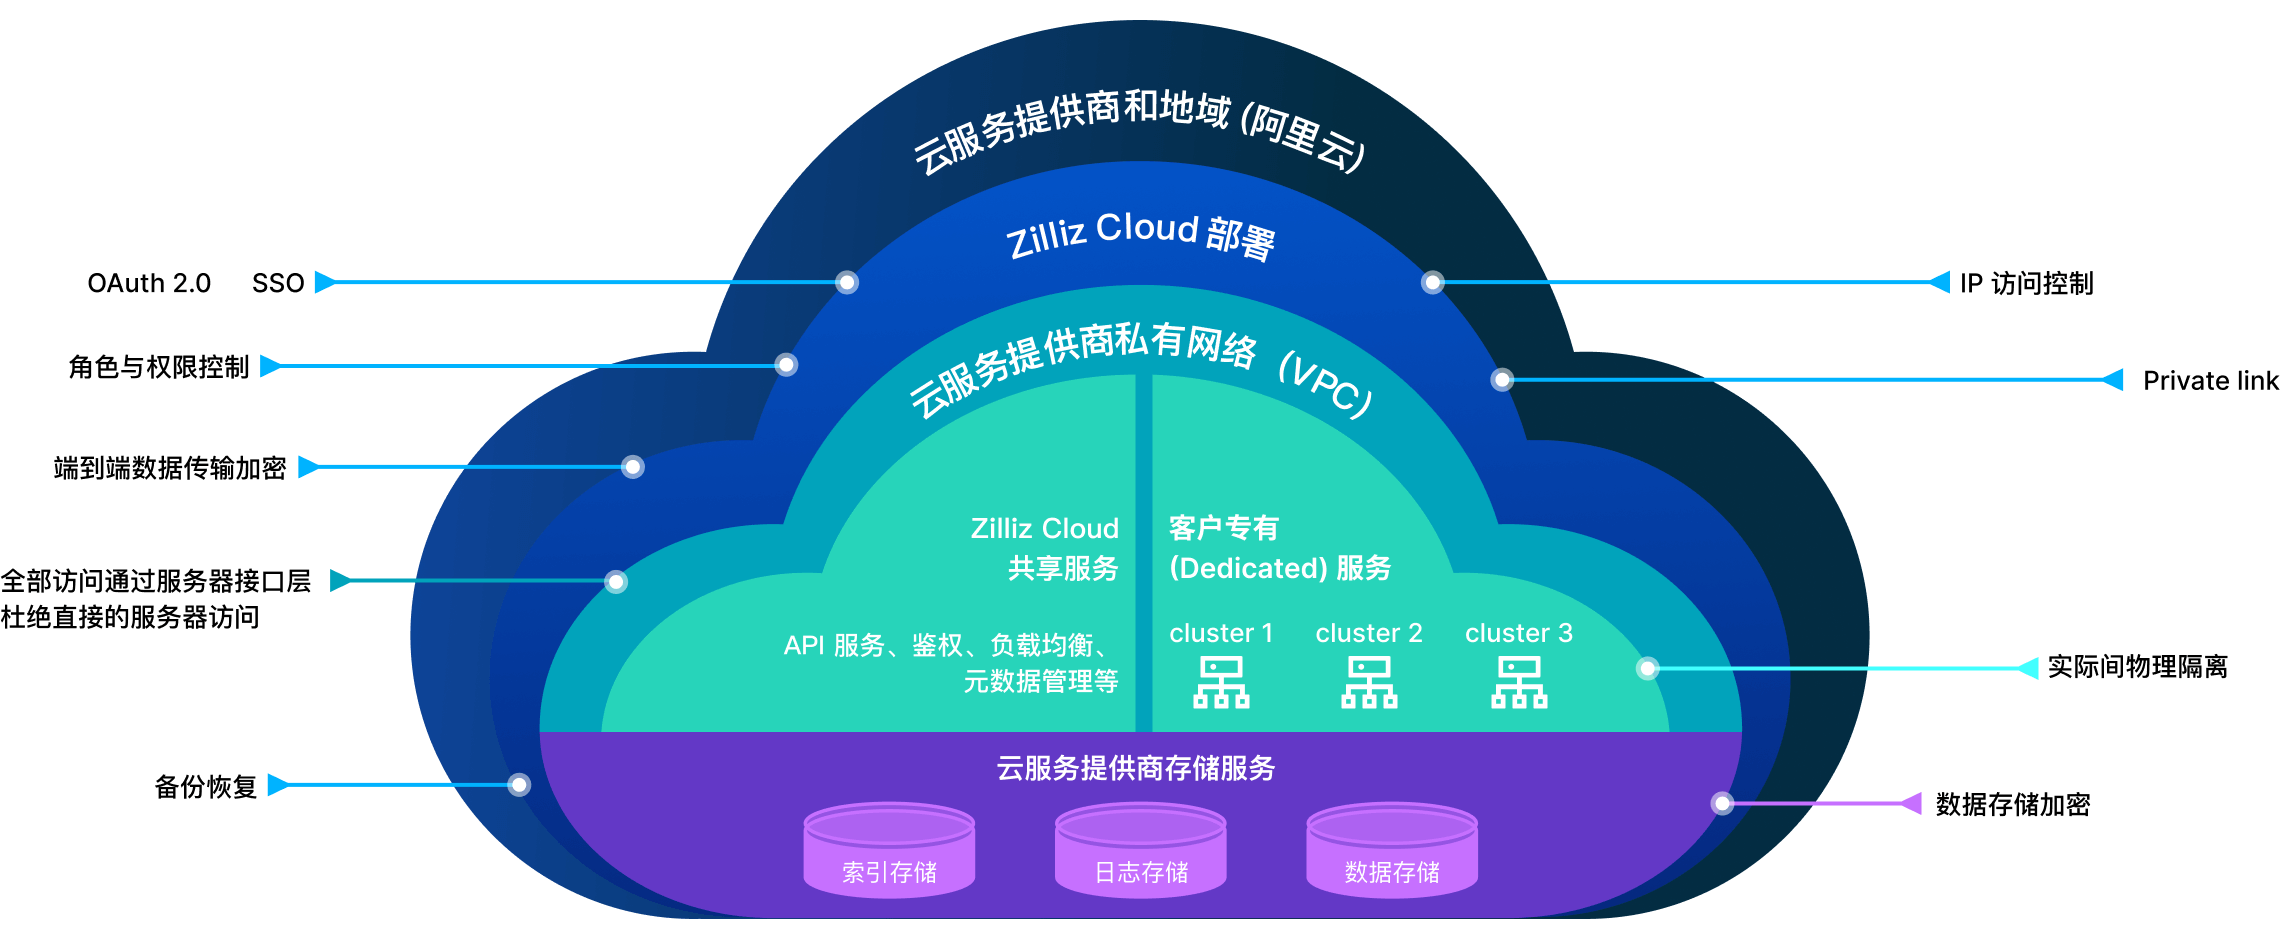 zilliz cloud security multi-layer